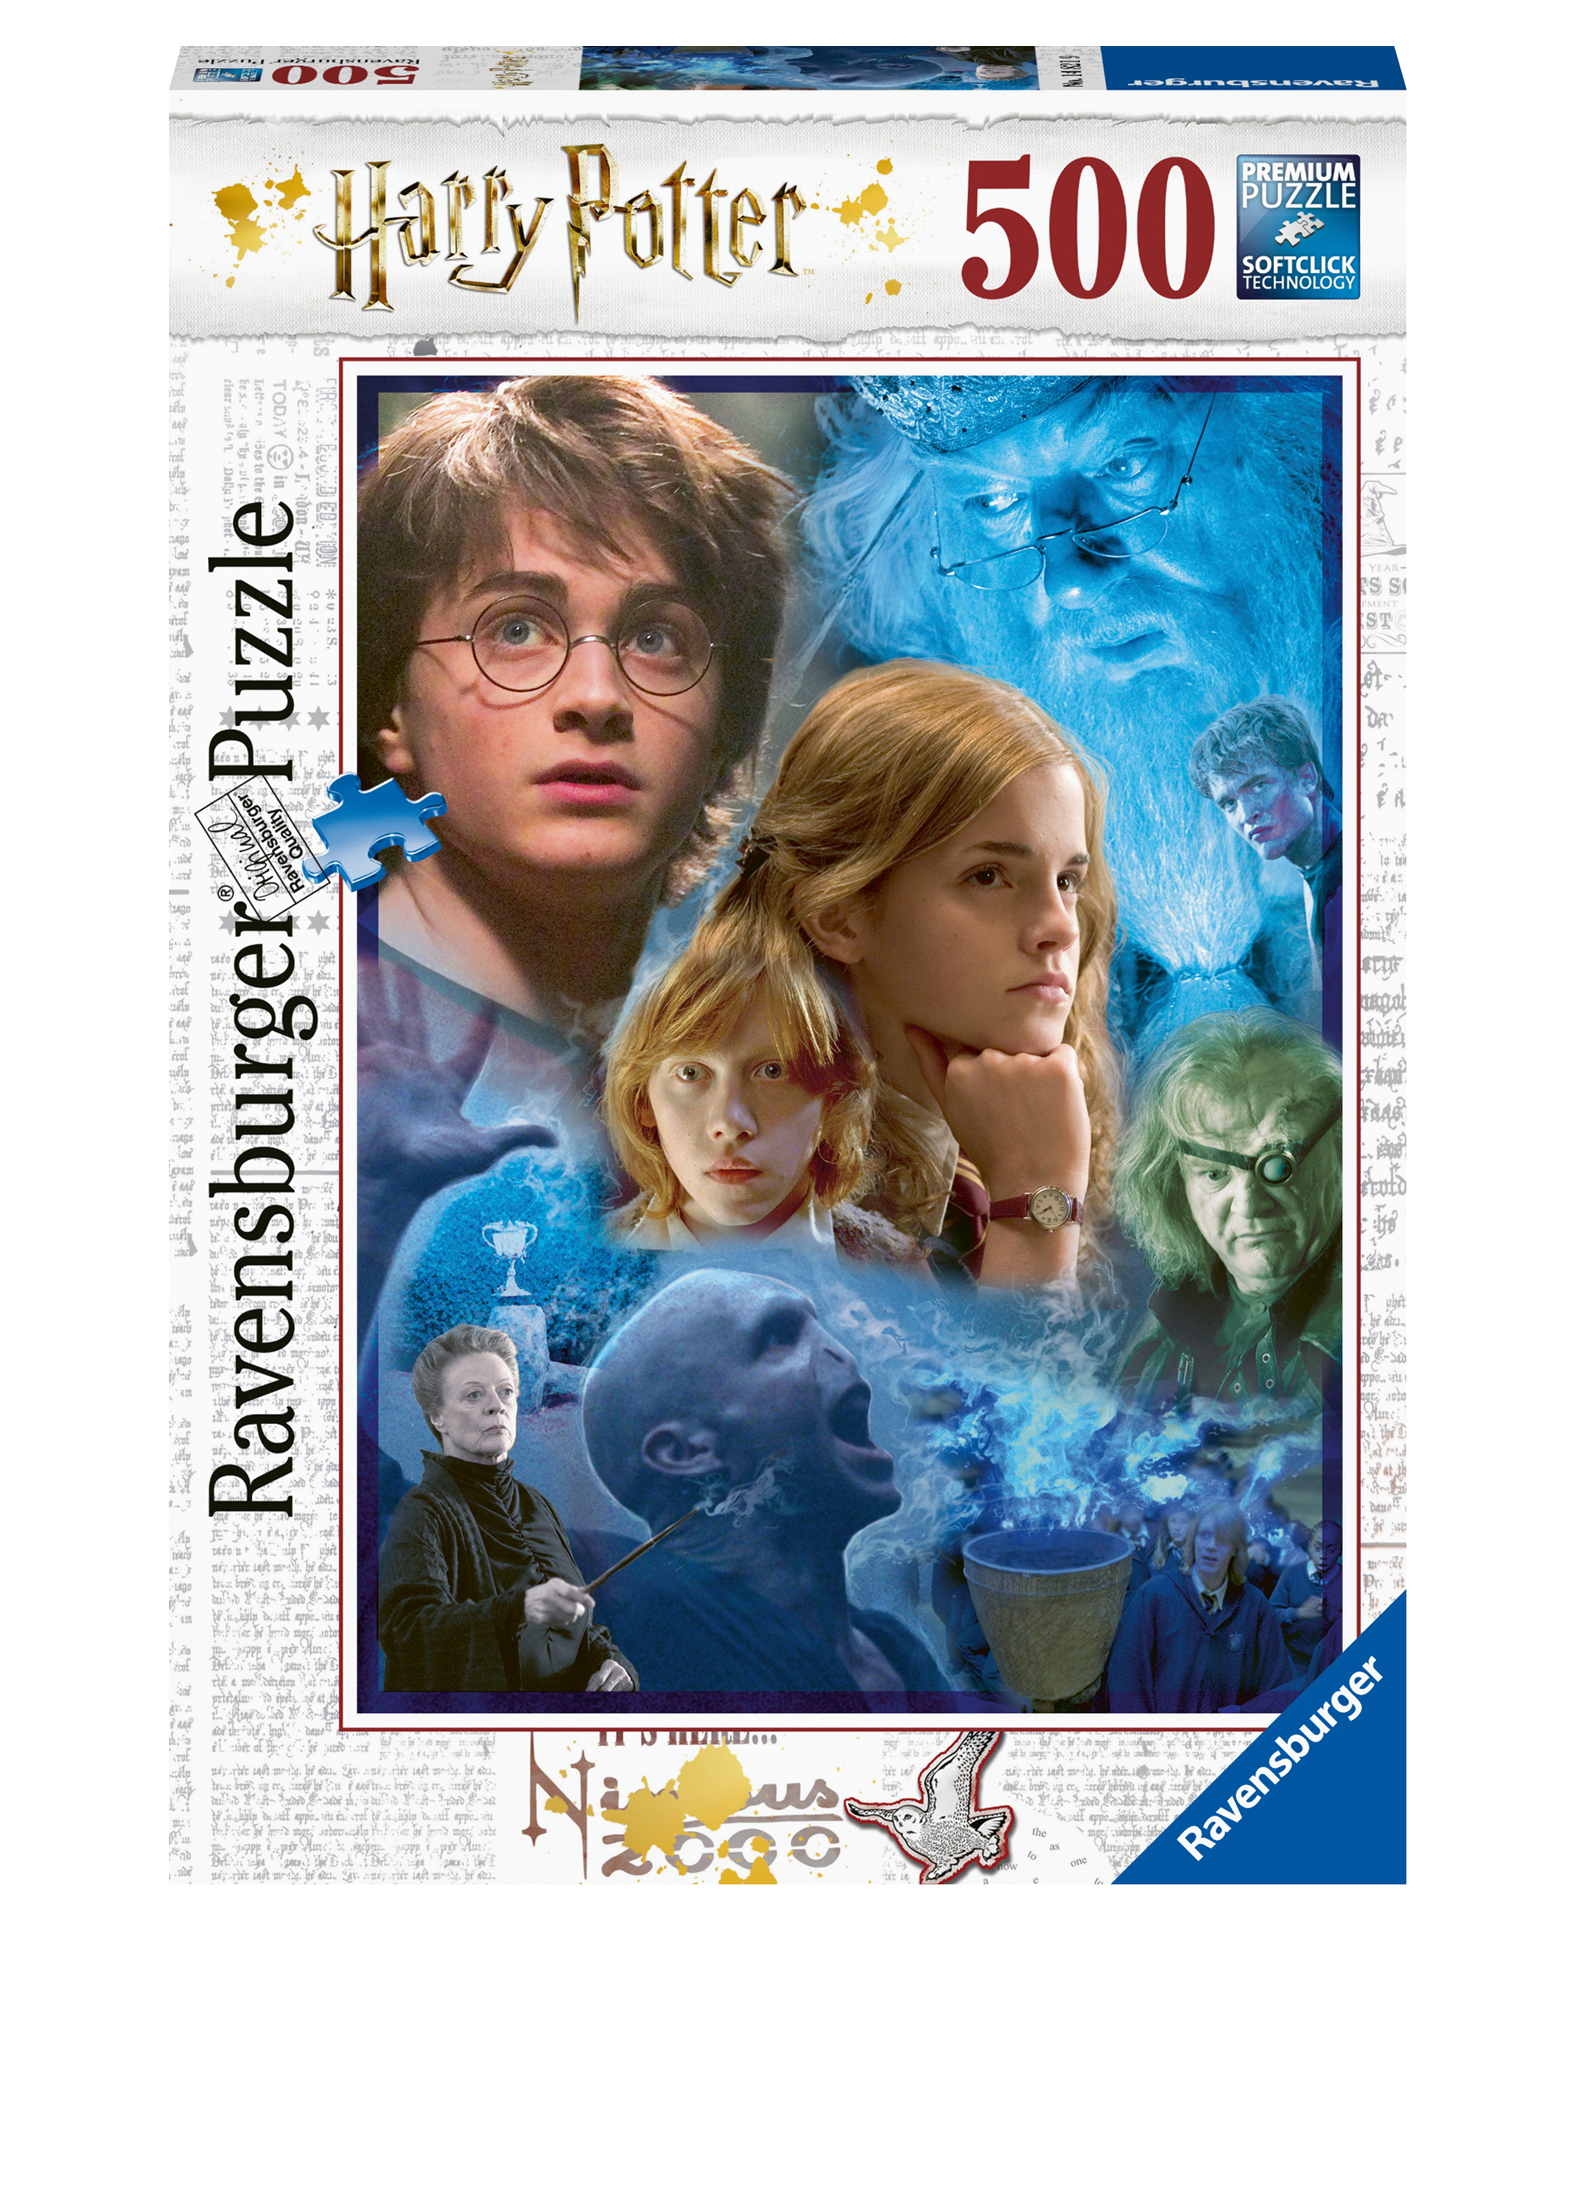 Harry Potter in Hogwarts image number 0